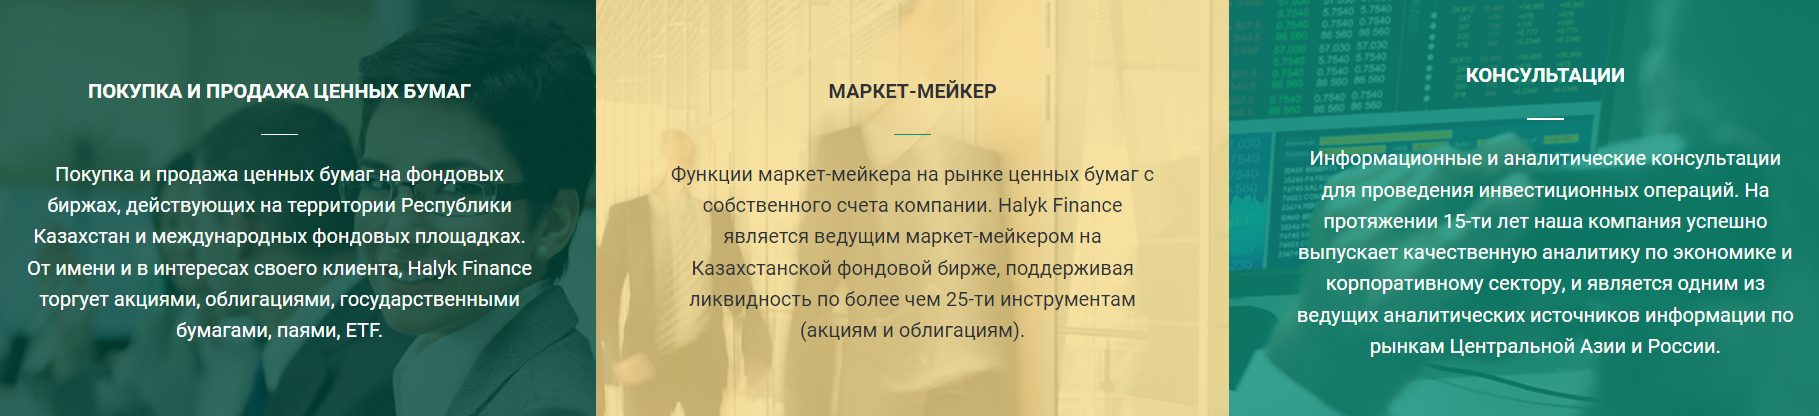 Предложения компании Halyk Finance